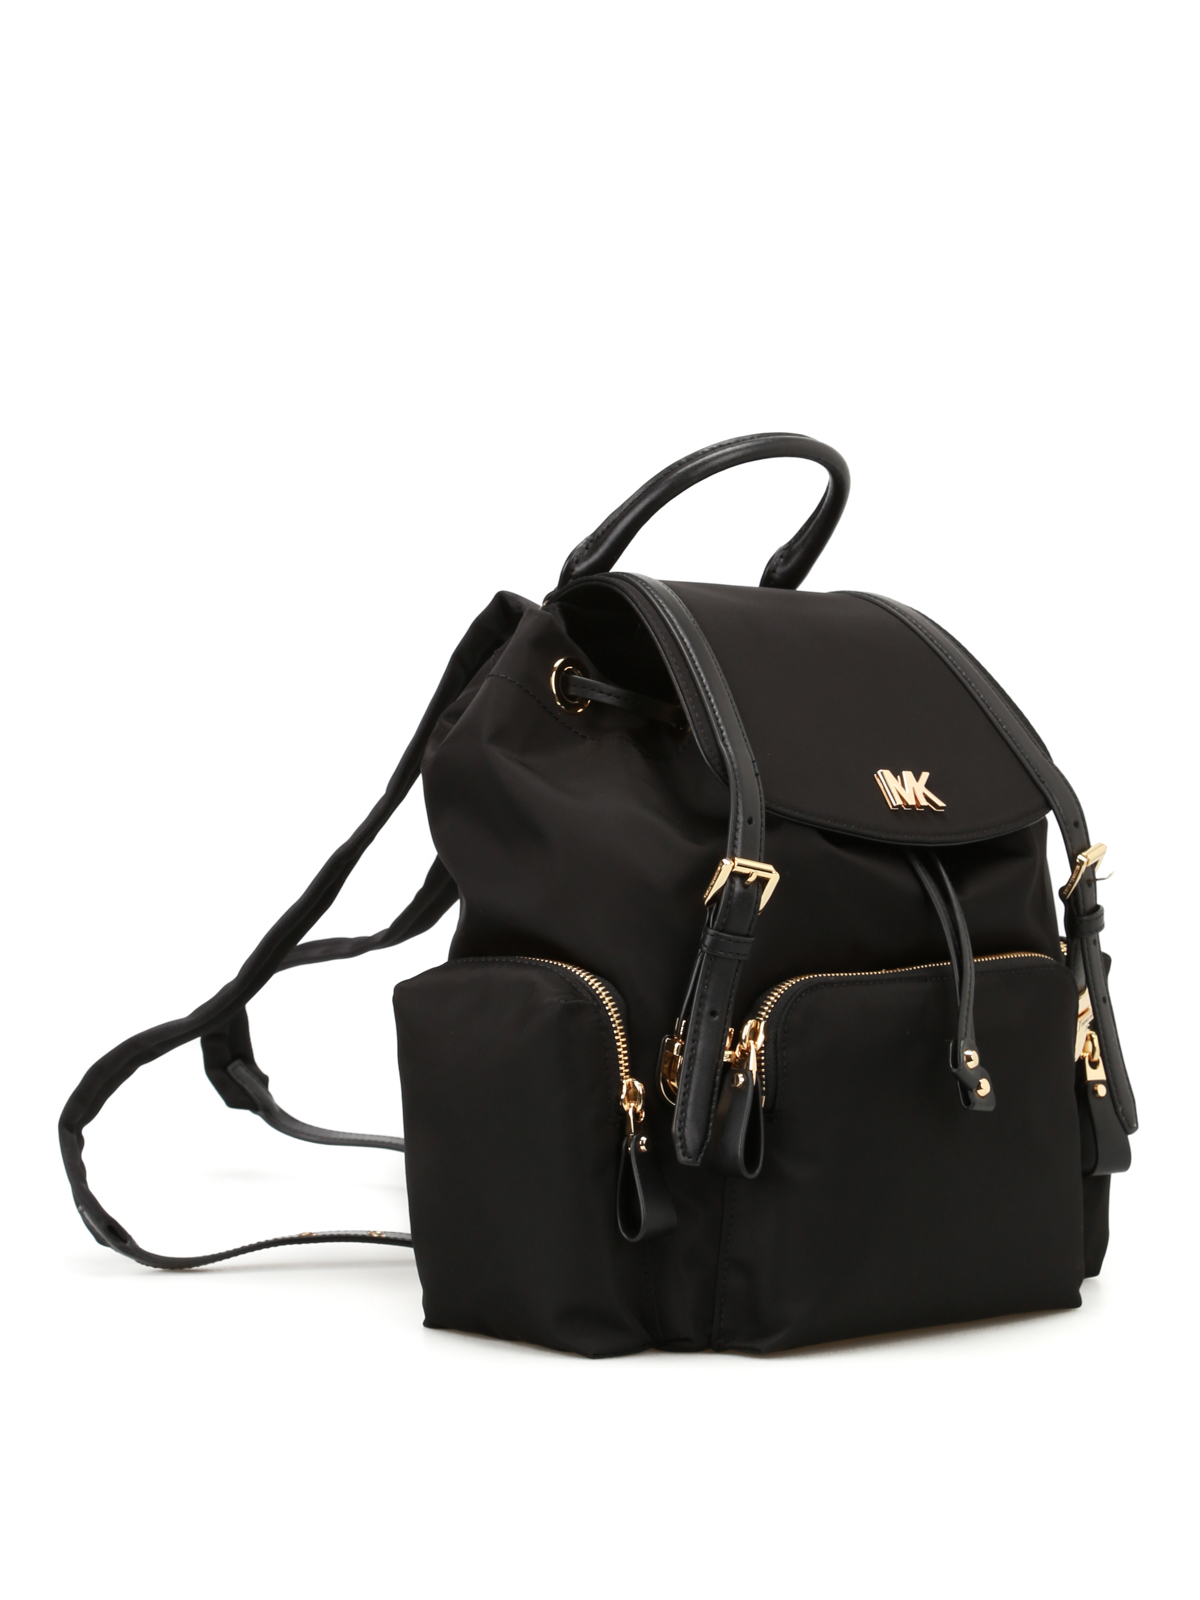 Backpacks Michael Kors - Beacon medium nylon backpack - 30S8GOXB2C001